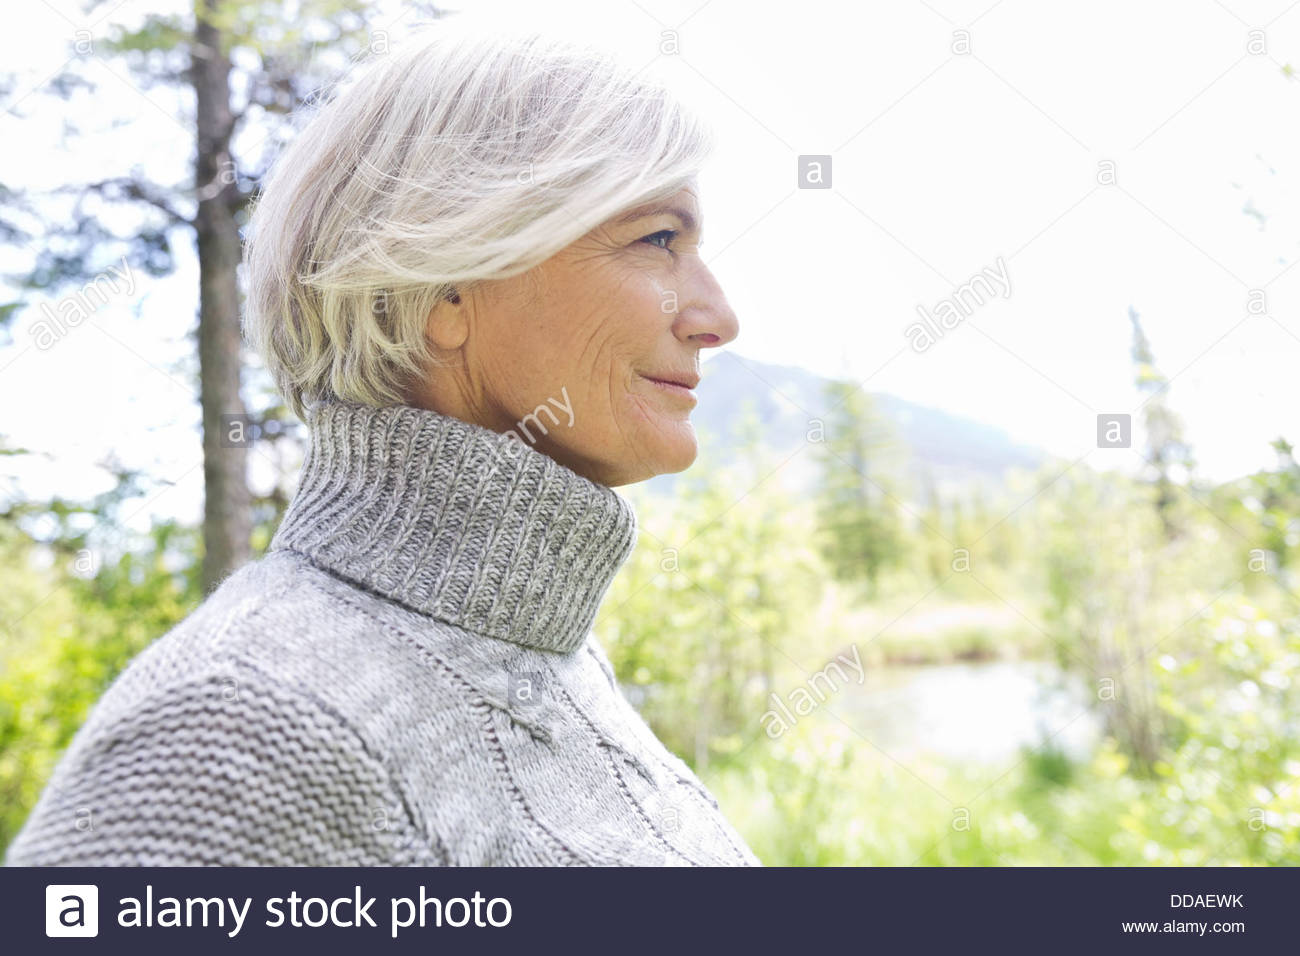 Profil-Bild von Reife Frau im Wald Stockfoto